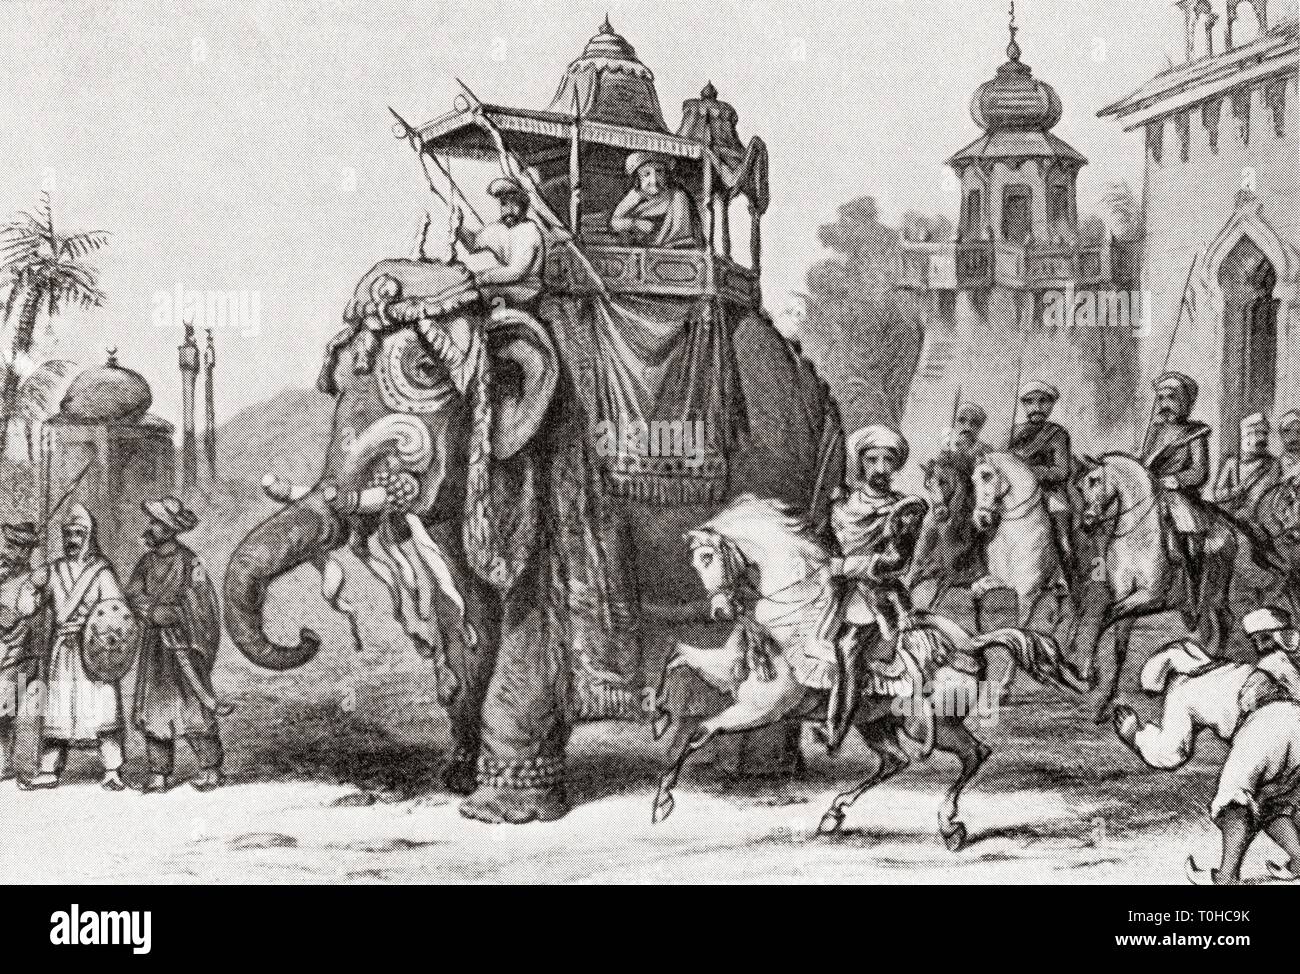 Nana Sahib lasciando Lucknow per Cawnpore in 1857 vecchia annata 1900s incisione, Nana Saheb Peshwa II, Dhondu Pant, indiano Peshwa dell'impero maratha, aristocratico e combattente, che ha guidato la ribellione a Kanpur durante la Grande rivolta del 1857 Foto Stock